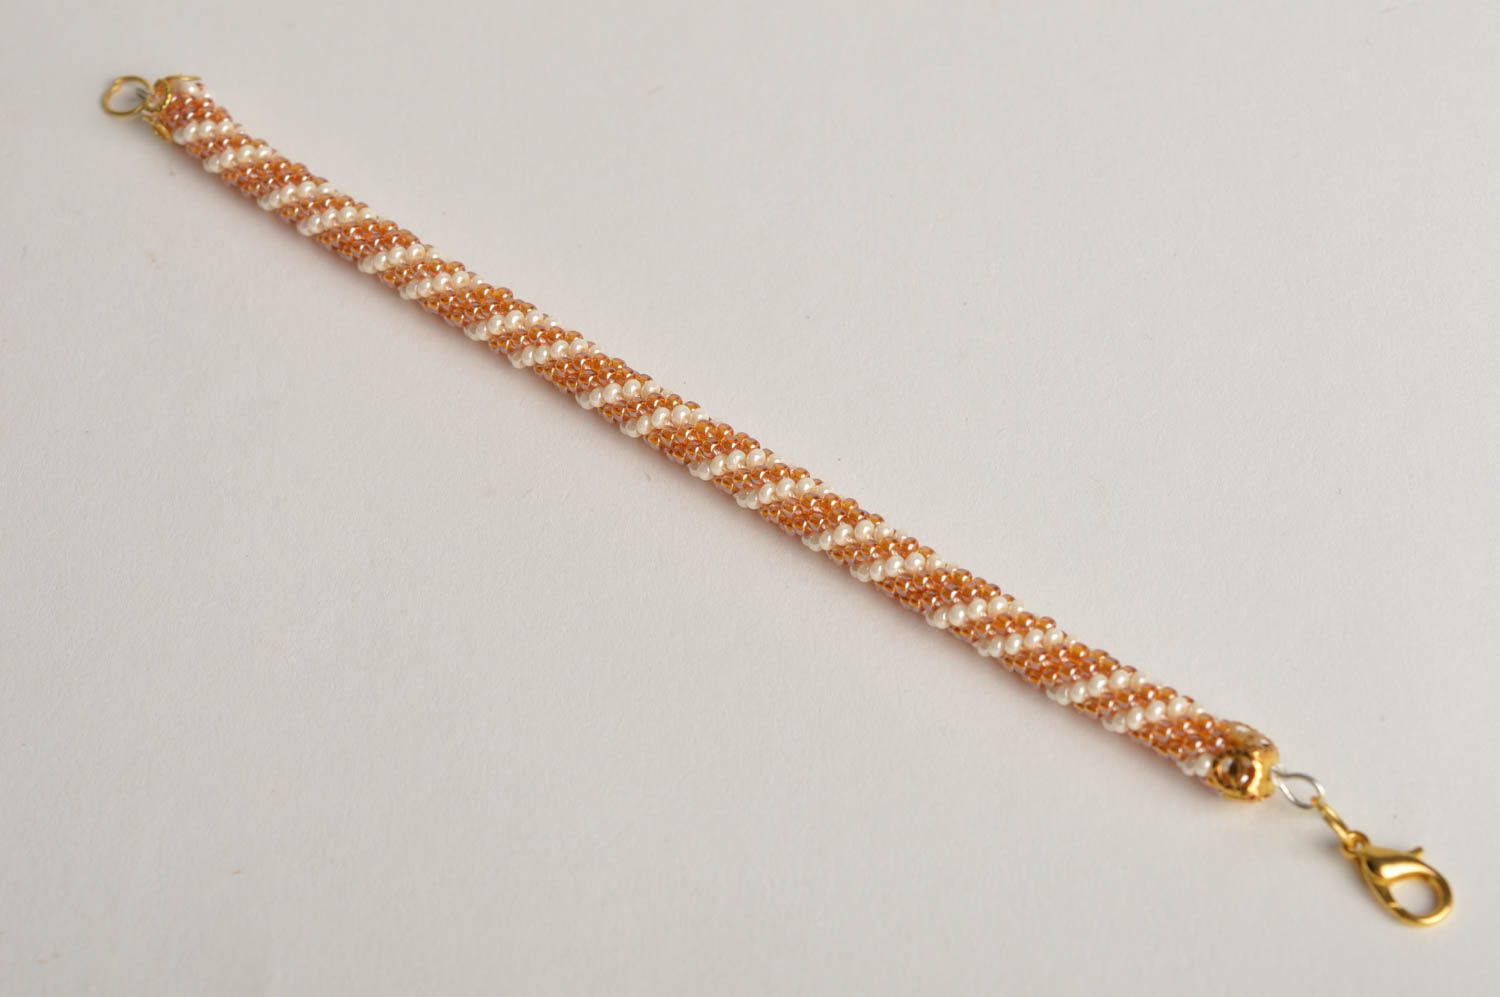 Bright elegant beige snd white beads adjustable bracelet for girls and women photo 2